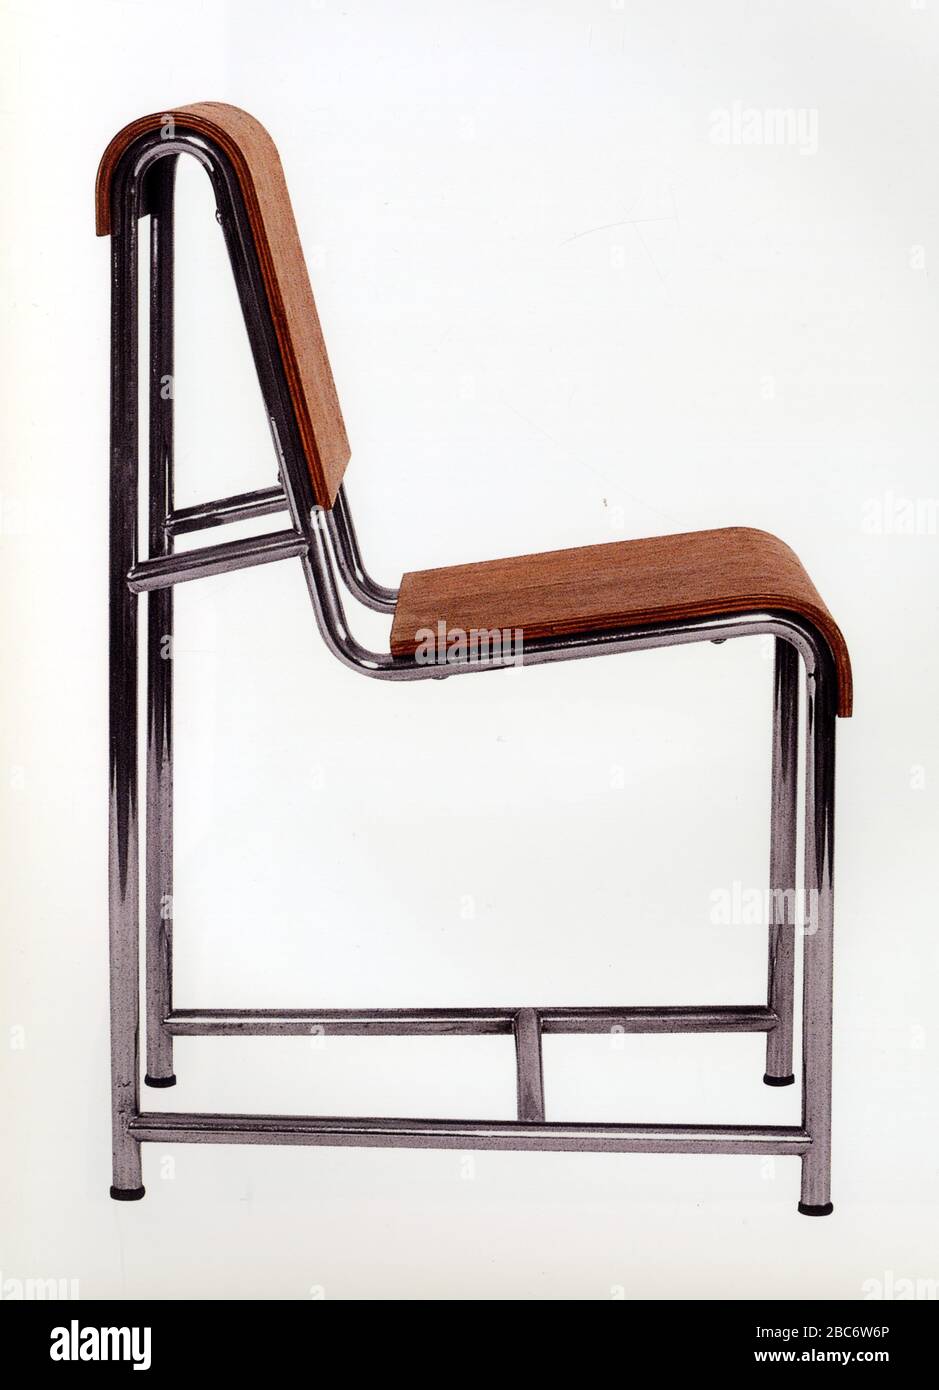 Un fauteuil moderne en bois et métal Stock Photo